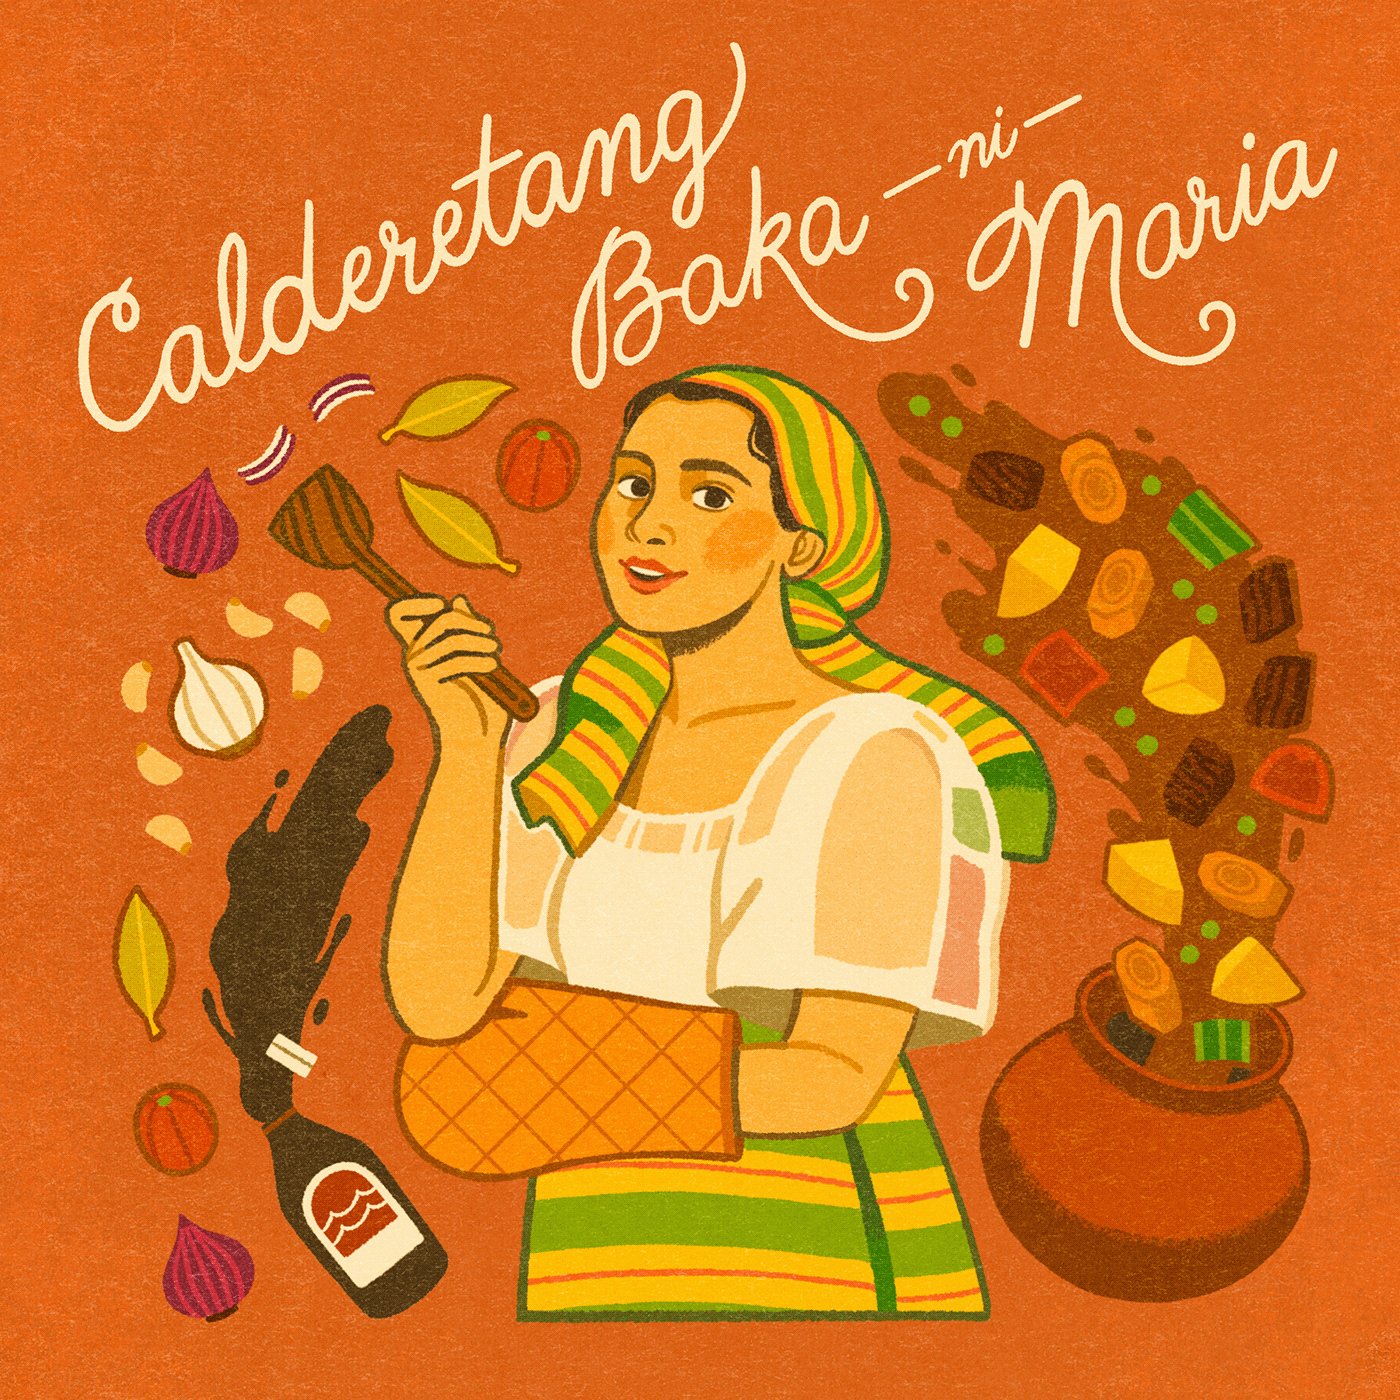 caldereta filipina filipino Filipino Food food illustration ILLUSTRATION  illustration art Illustrator Philippine Food  philippines